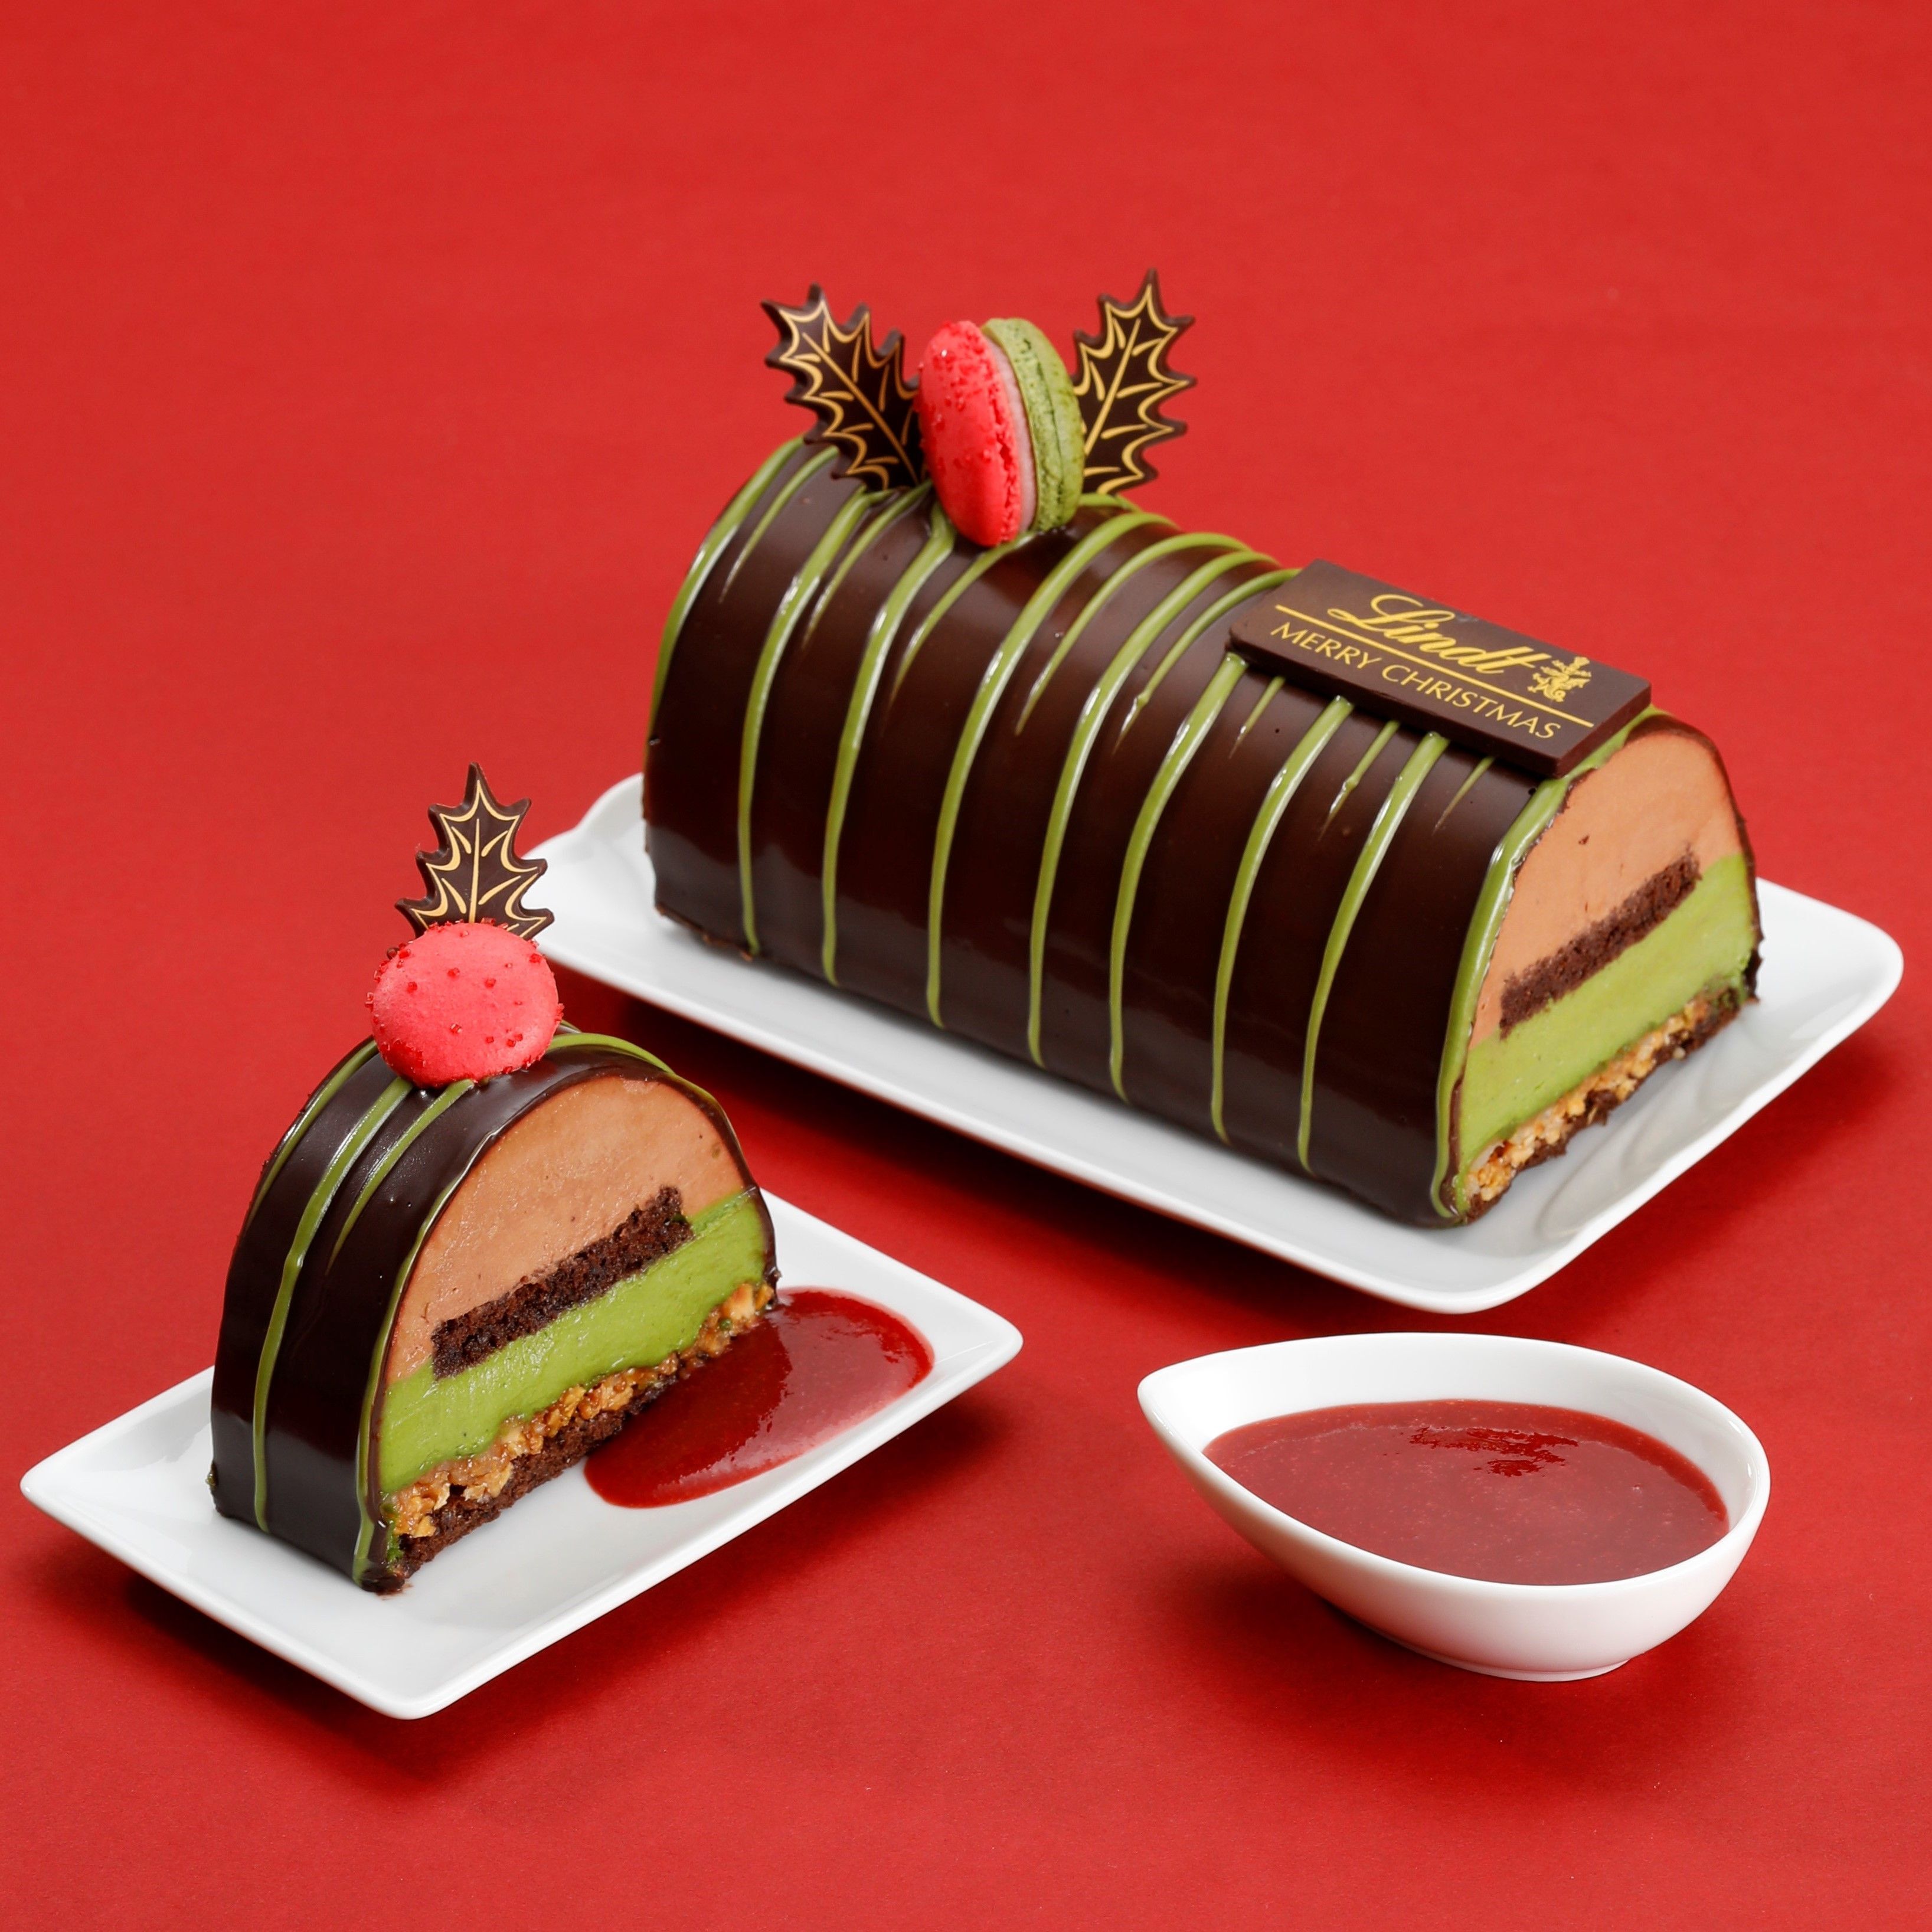 リンツ 18年クリスマスケーキ ショコラ 抹茶 11月1日にホールケーキの予約 ピースケーキの販売がスタートオンラインショップ限定で冷凍配送のホール ケーキも登場 マピオンニュース